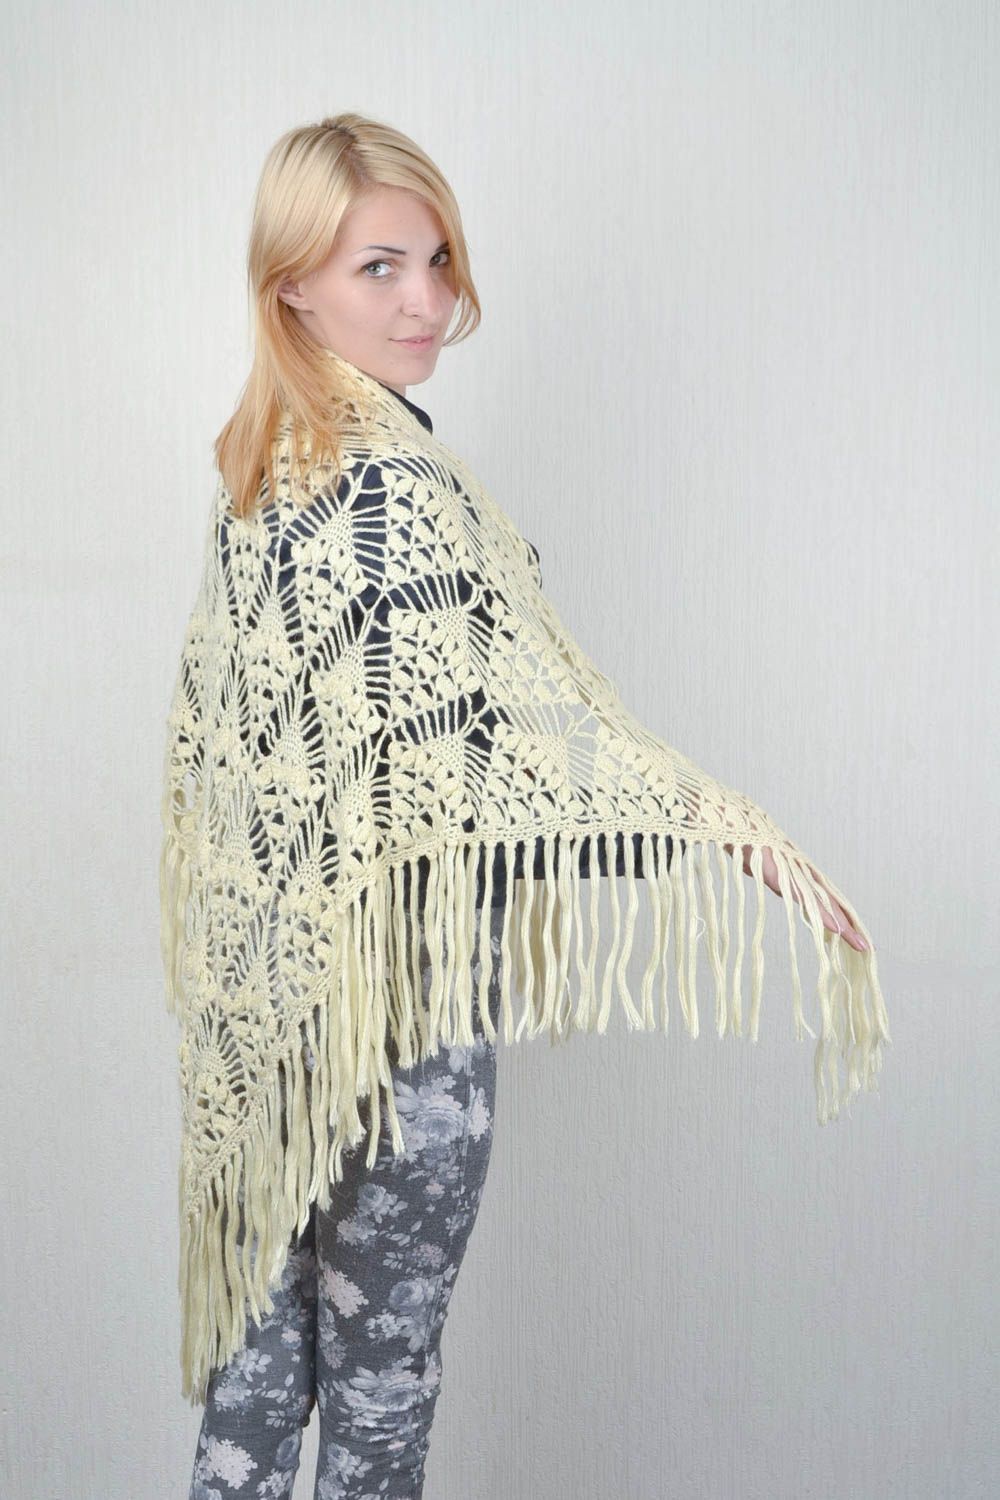 Handmade crocheted shawl designer winter clothes accessory unique present photo 2